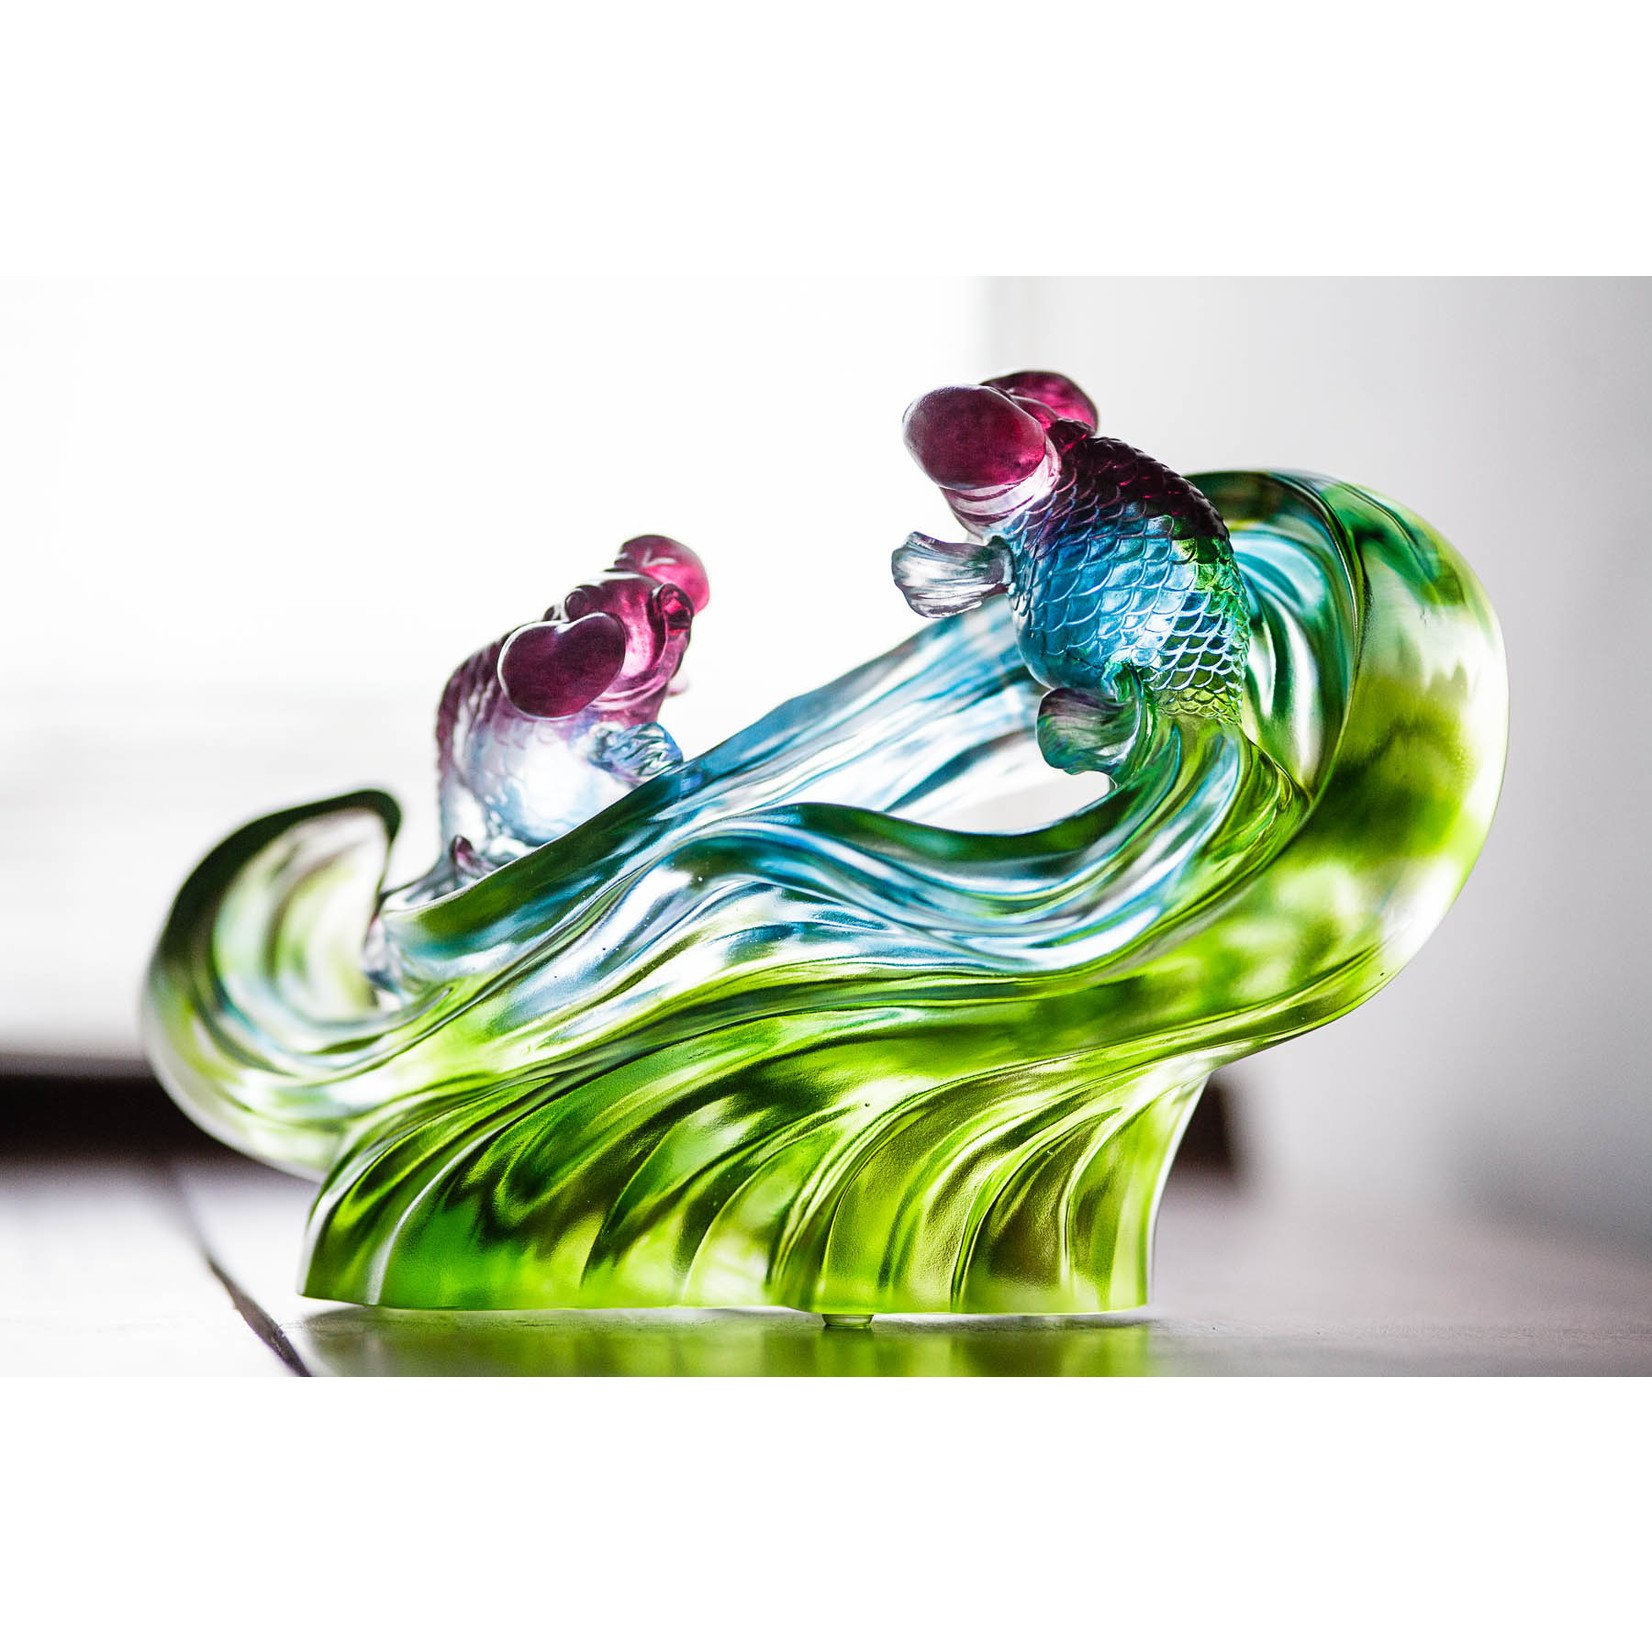 LIULI Crystal Art Crystal Gold Fish Figurine (Enjoyment) - "Echo of Joy" in Blue/Green